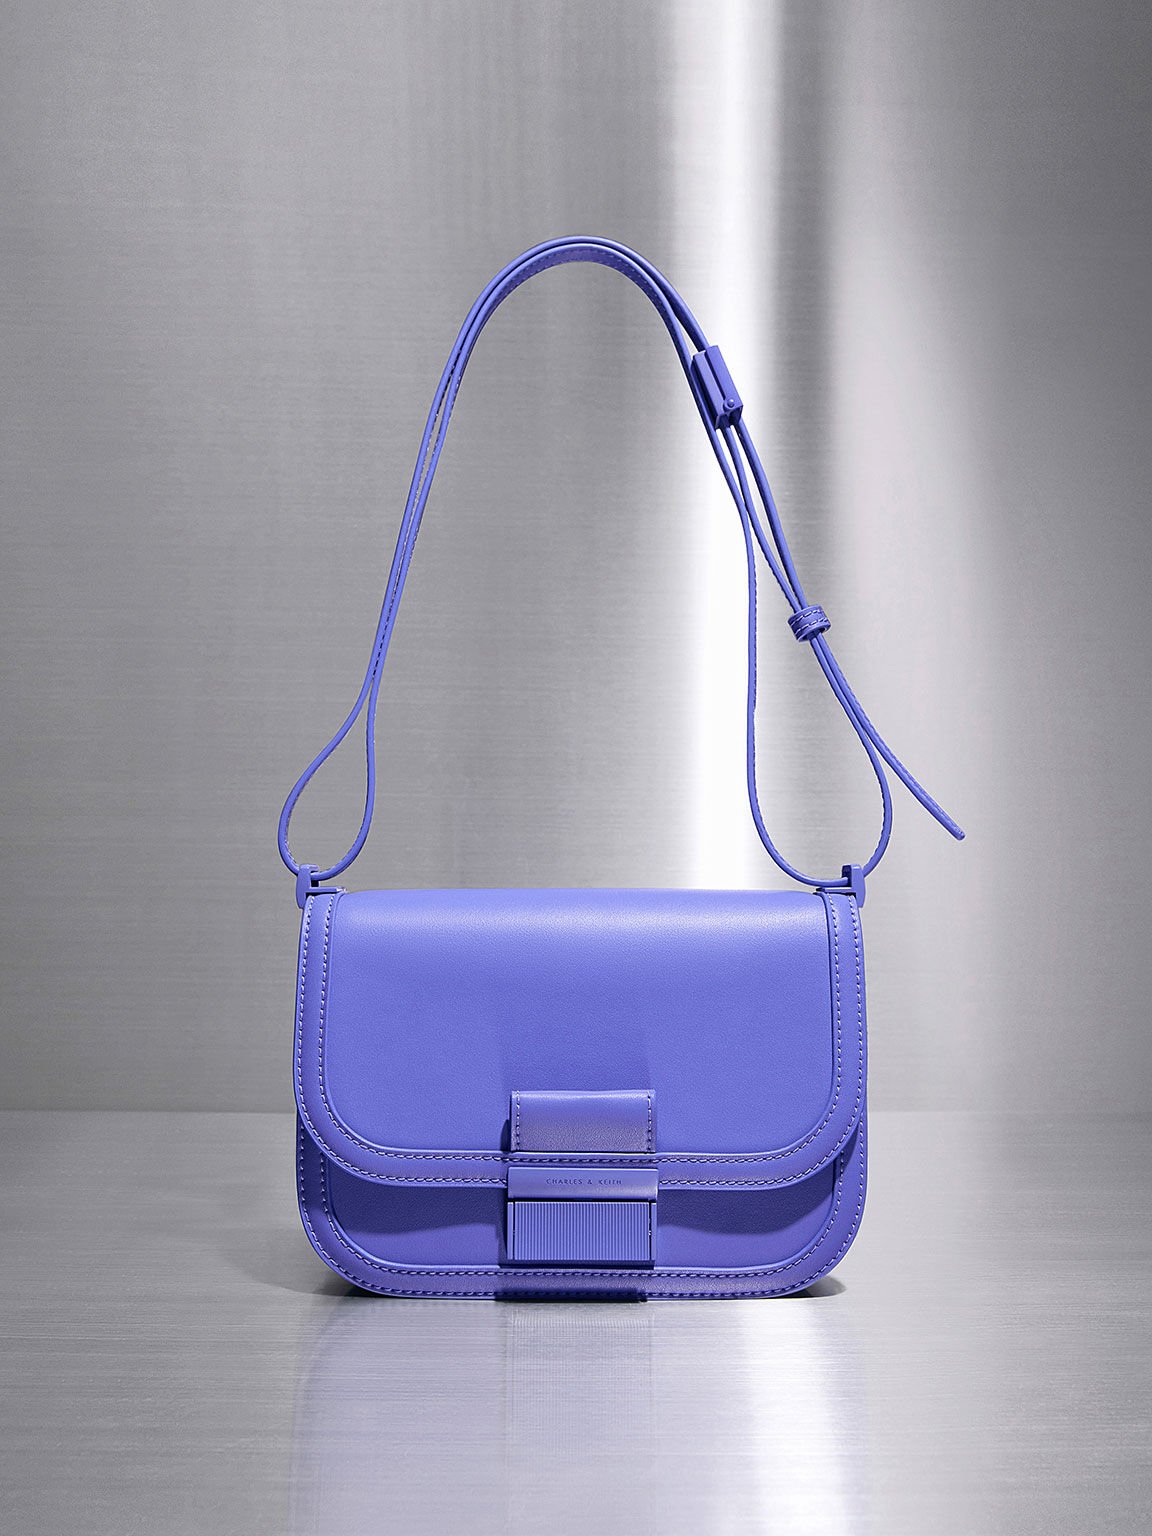 Pastel Blue Underarm Scoop Bag | Tote Handbag | Beach Bag